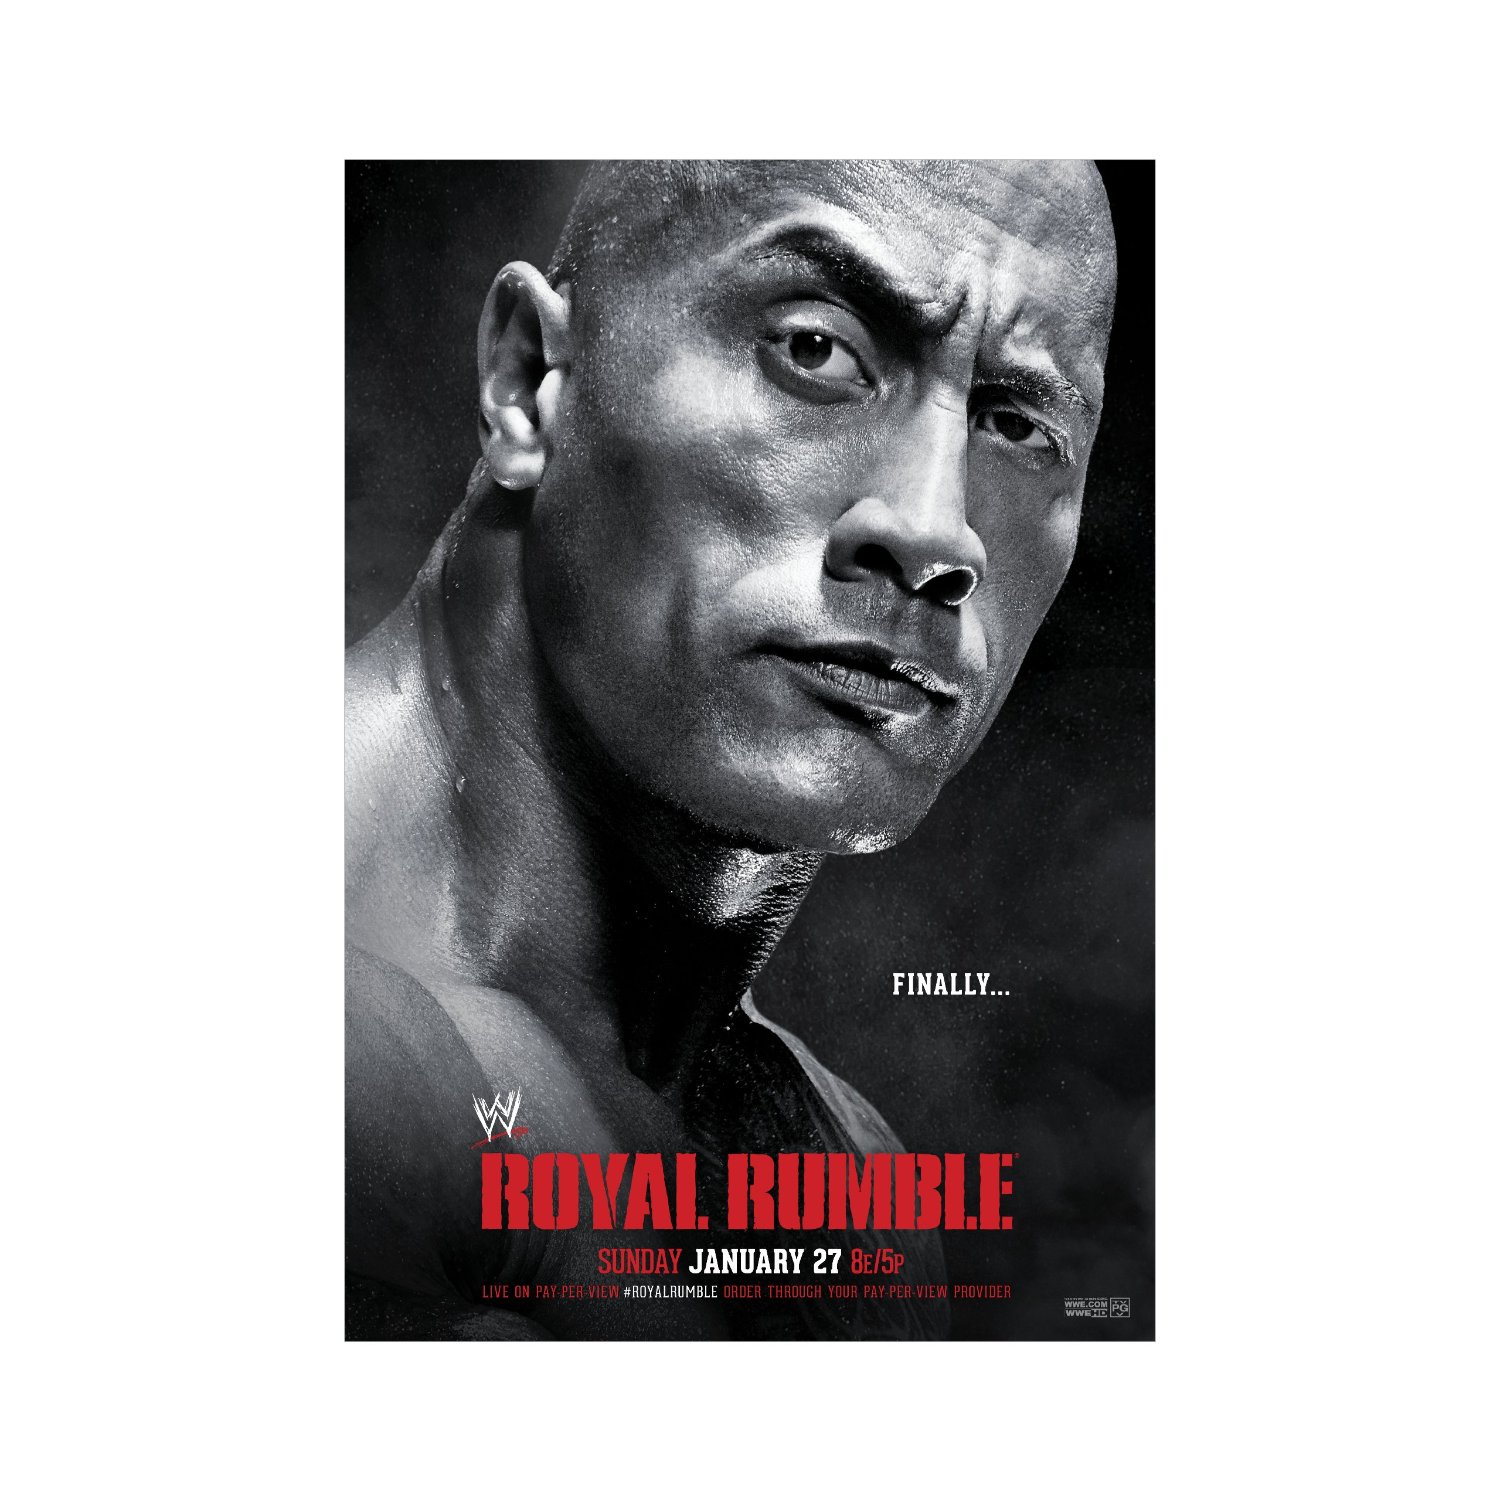 	حصرياً و قبل الجميع : البوستر الرسمي لـ المهرجان الاسطوري Wwe Royal Rumble 2013 بجودة العادية و الاصلية 91a7a4cnwTL._AA1500_